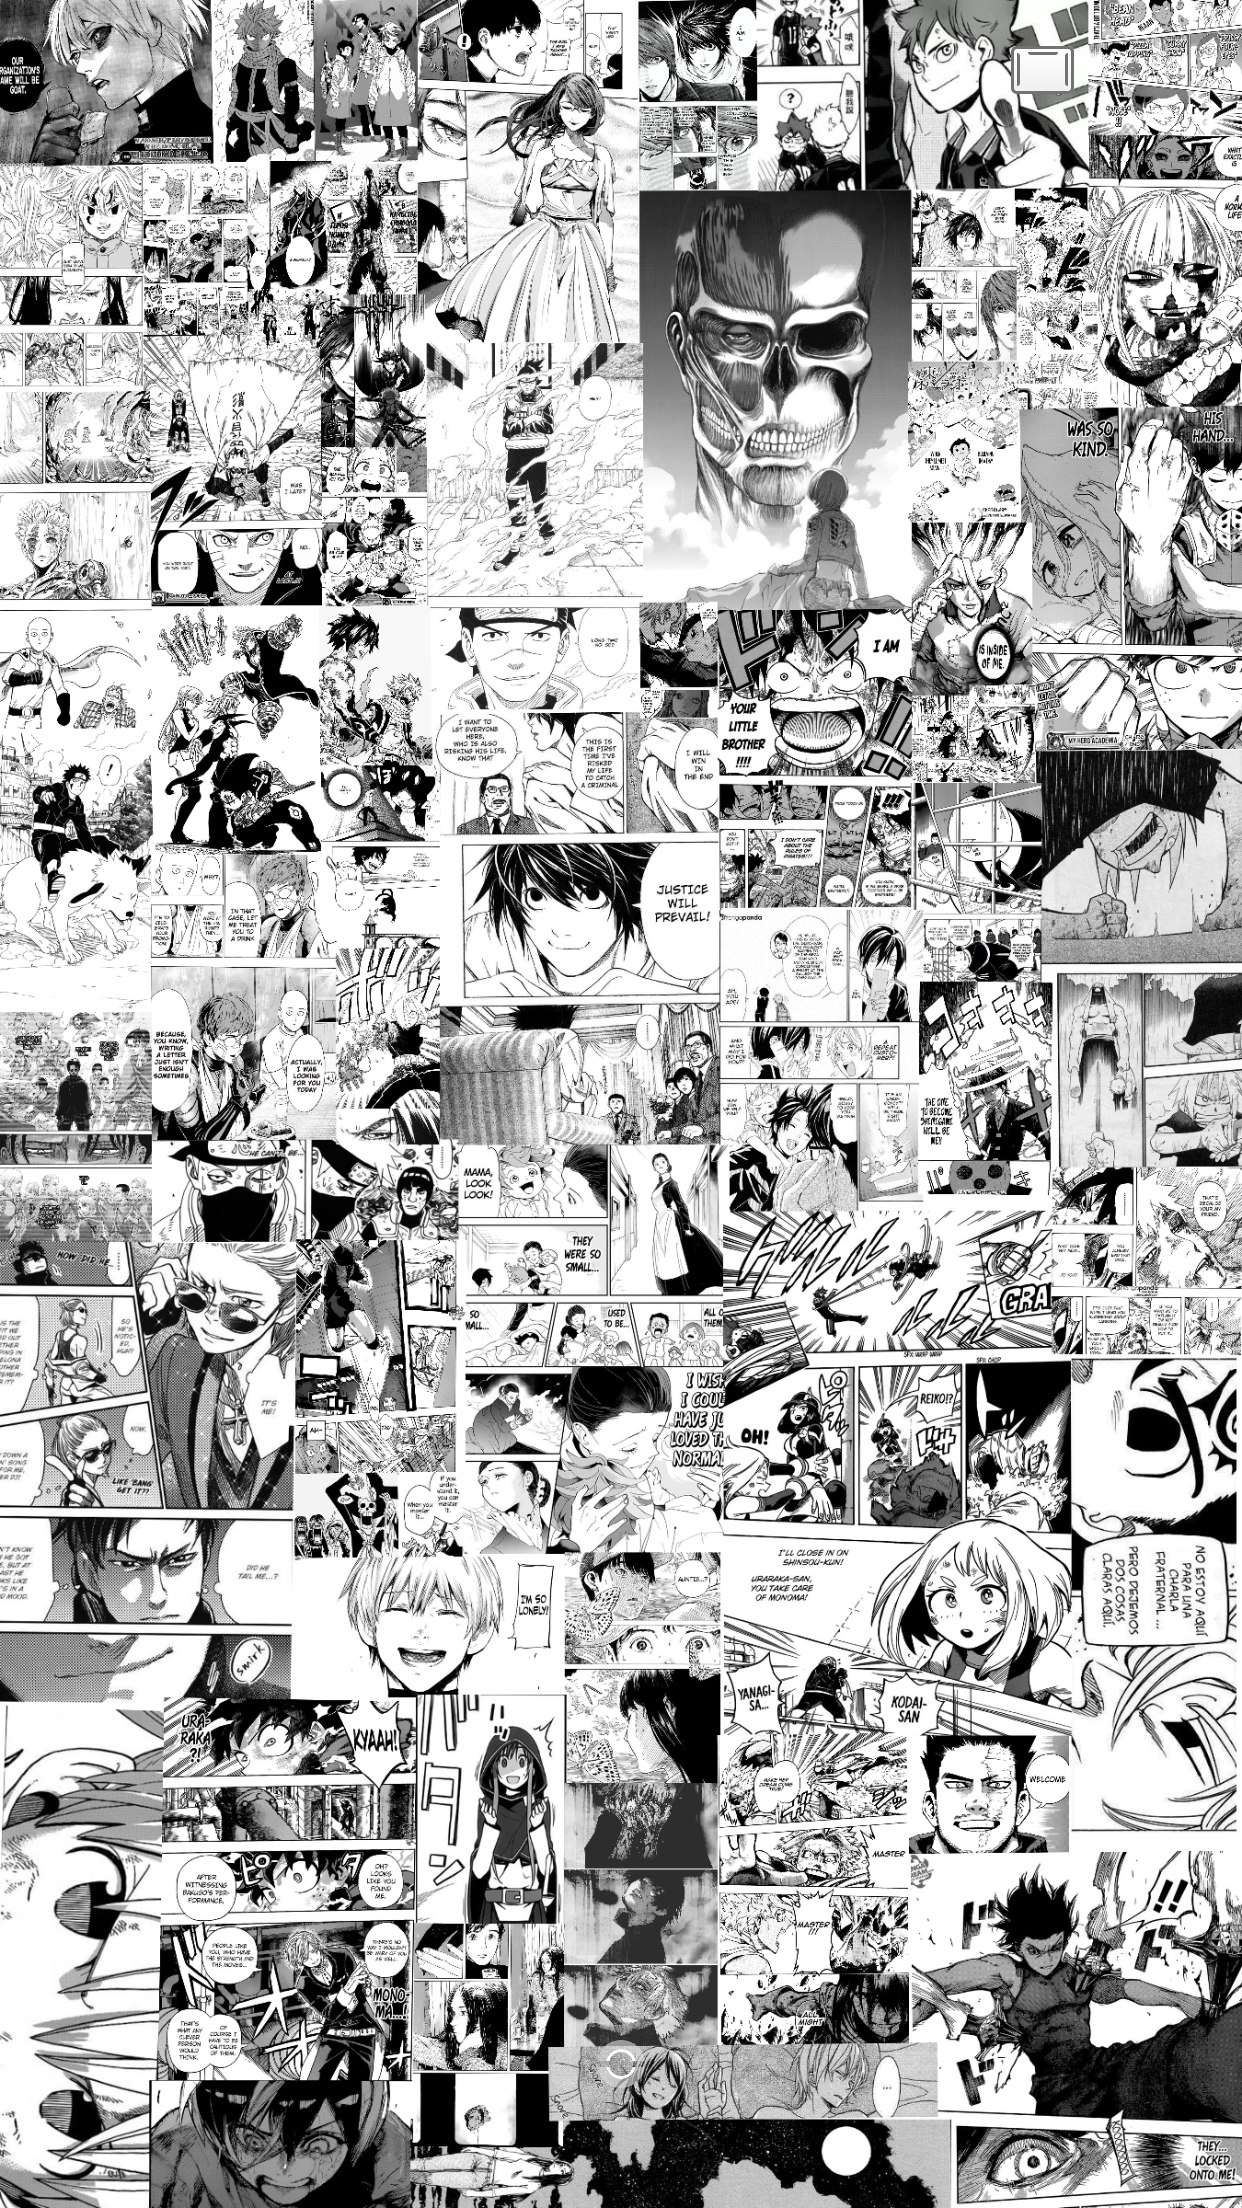 Manga Panel Collage